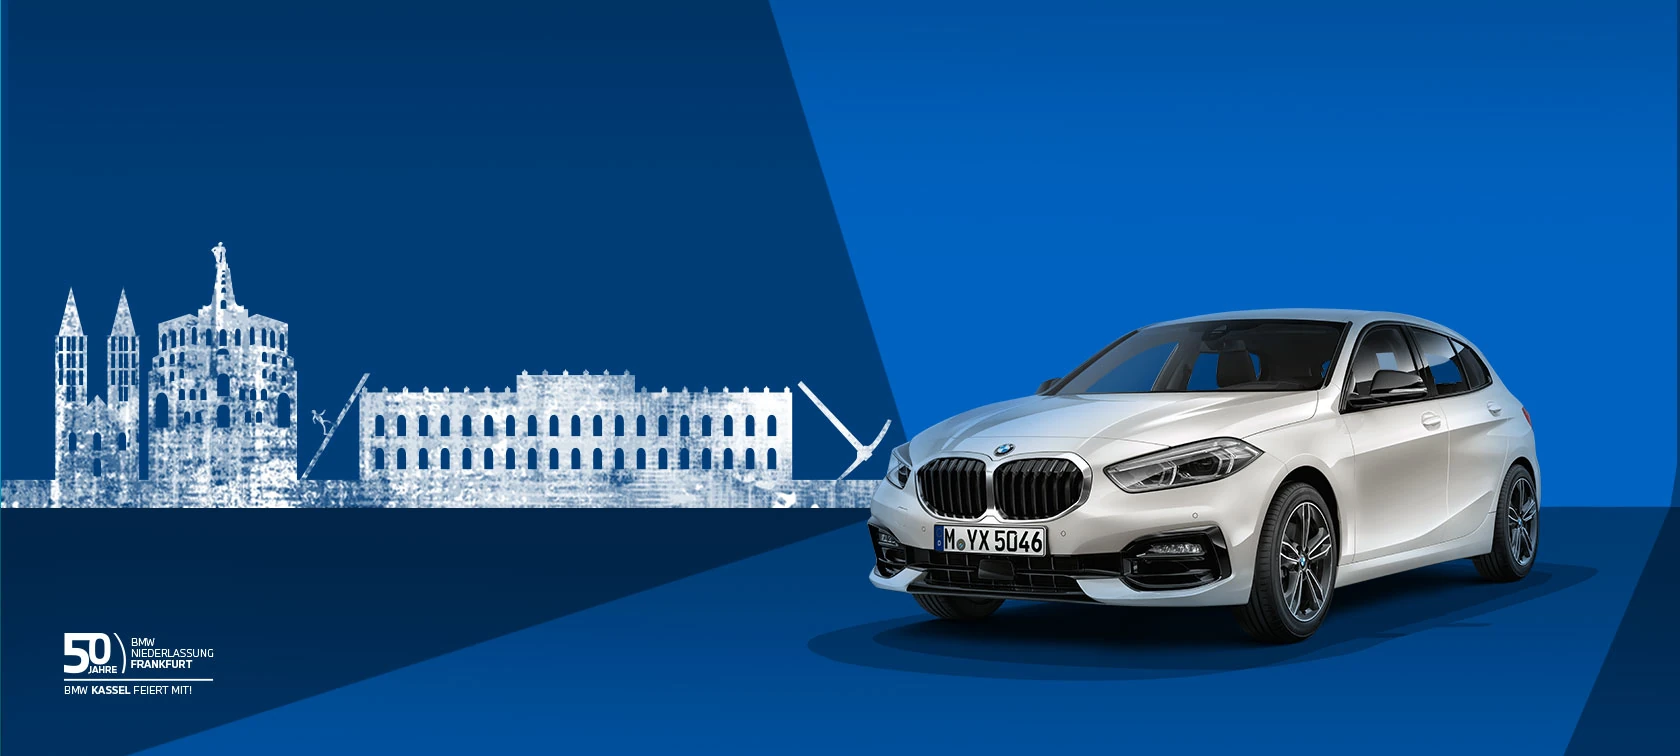 BMW Luxury Line Schlüssel - Startseite Forum Auto BM